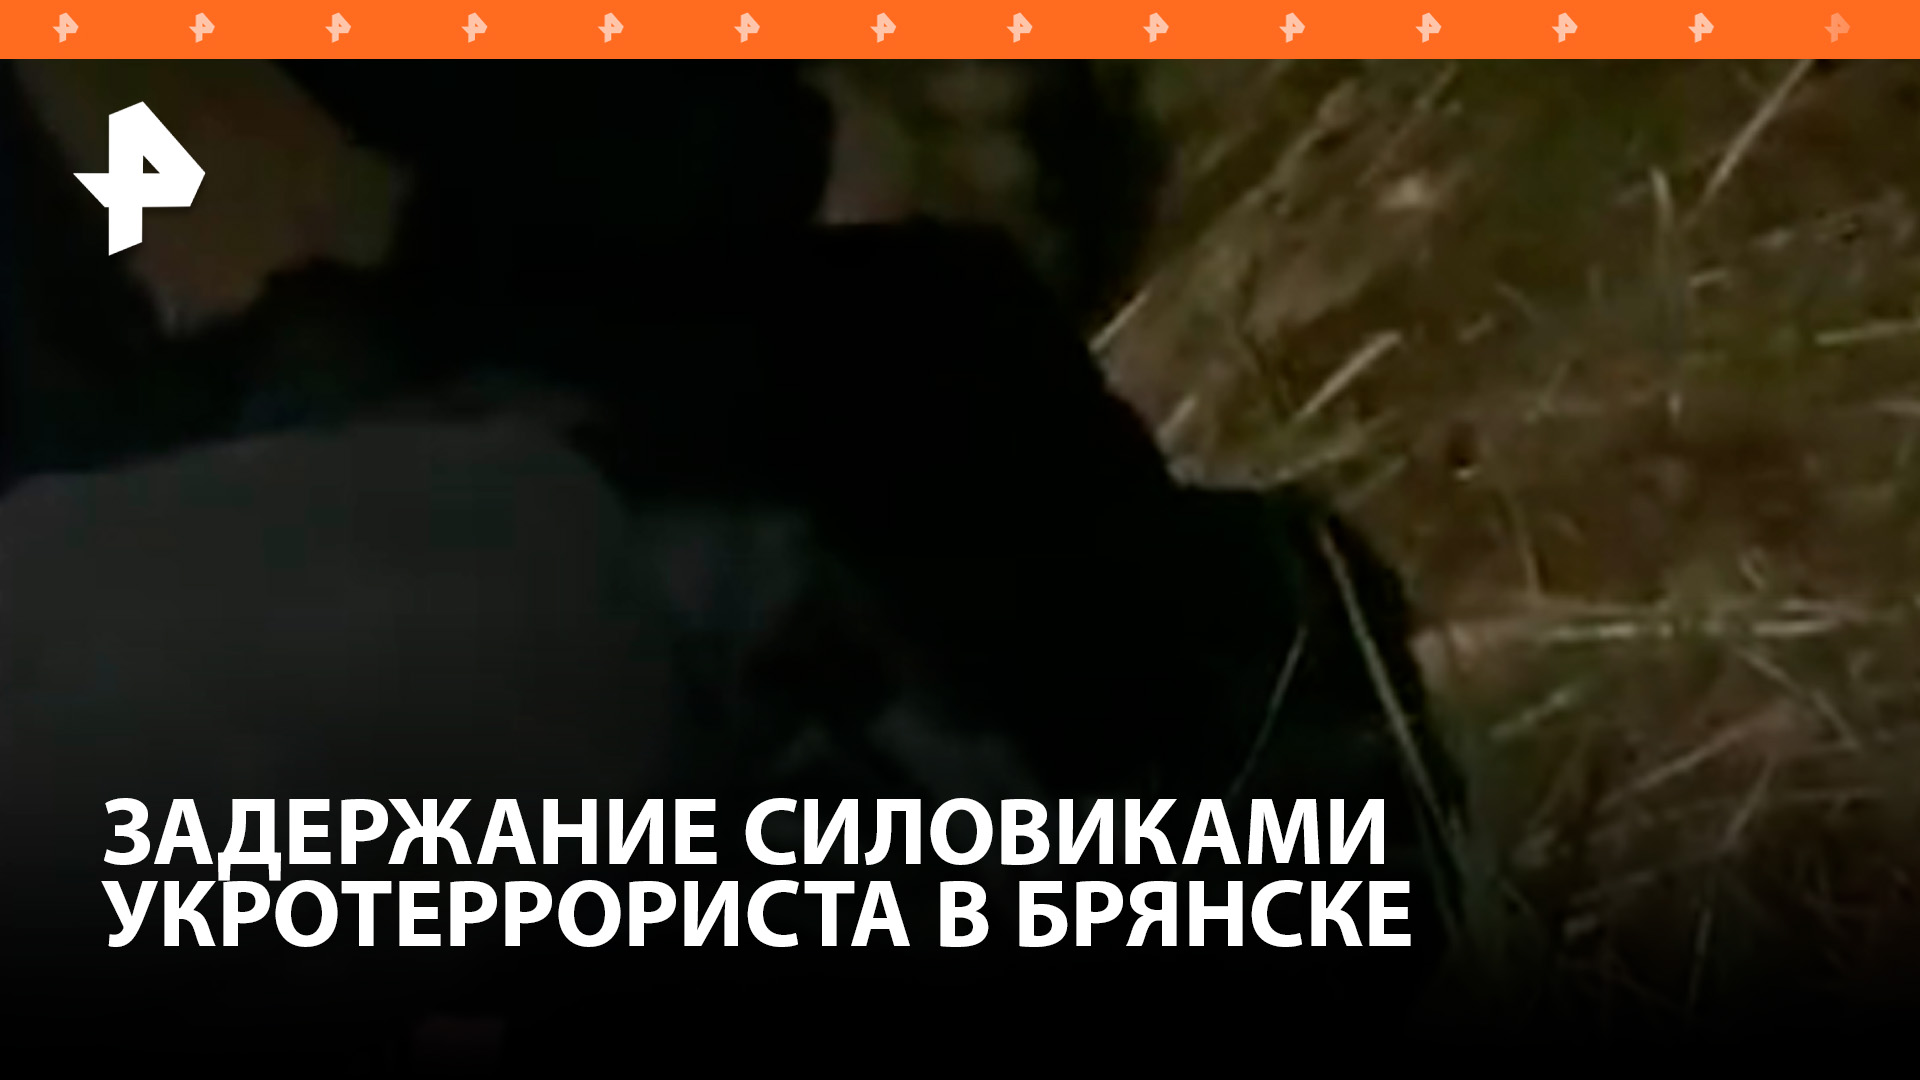 ФСБ пресекла теракт в Брянске, готовившийся сторонником украинских националистов / РЕН Новости